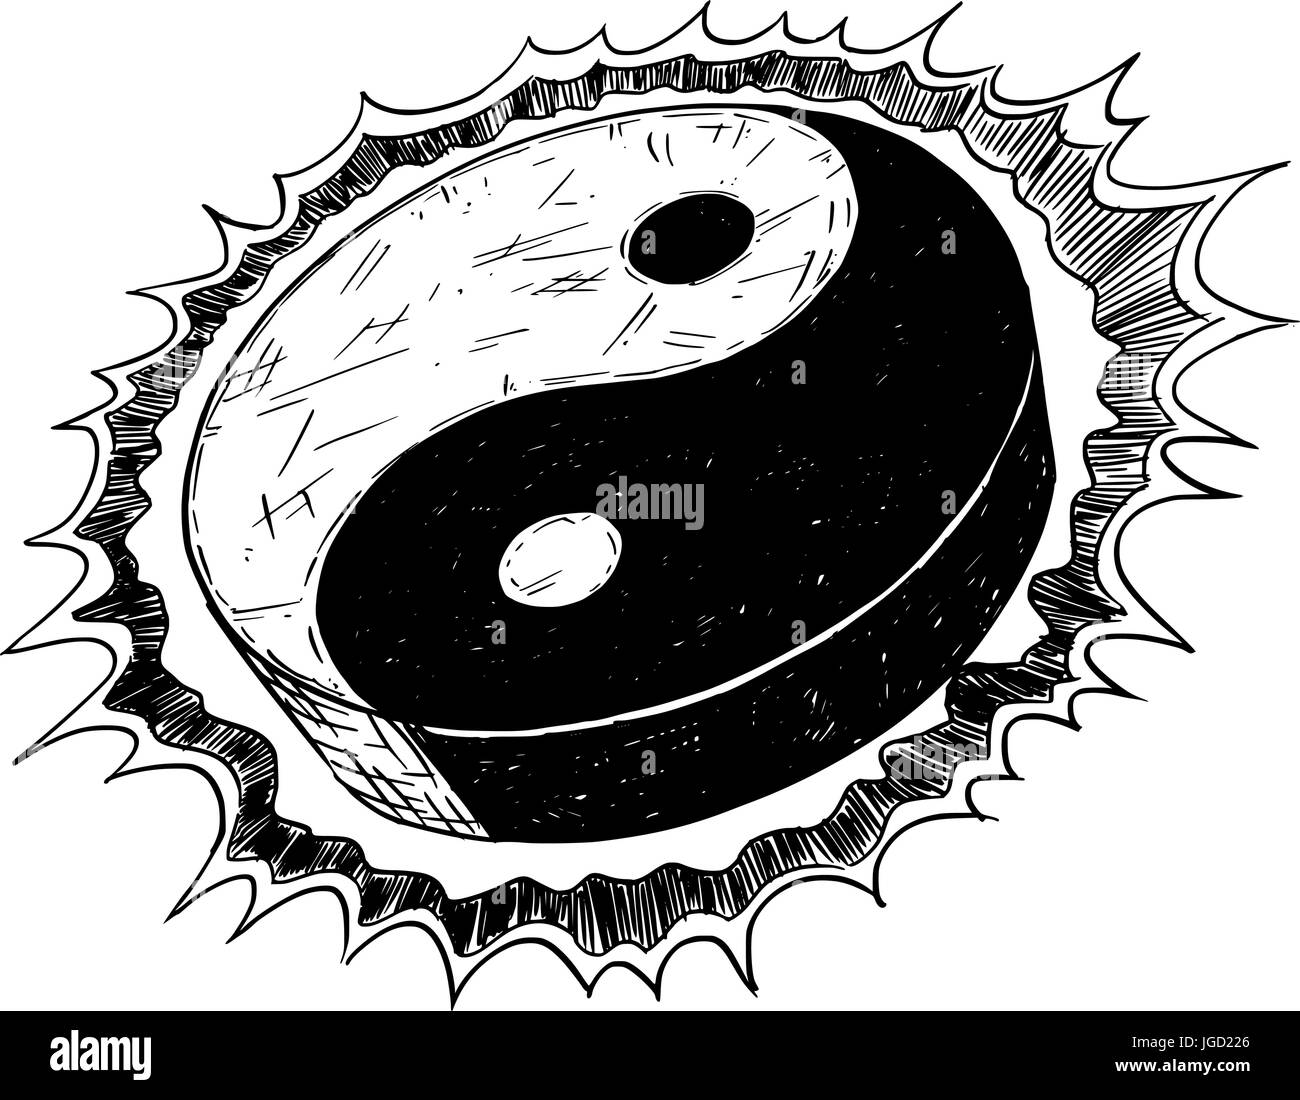 Hand drawn vector doodle illustration of yin yang jin jang symbol. Stock Vector